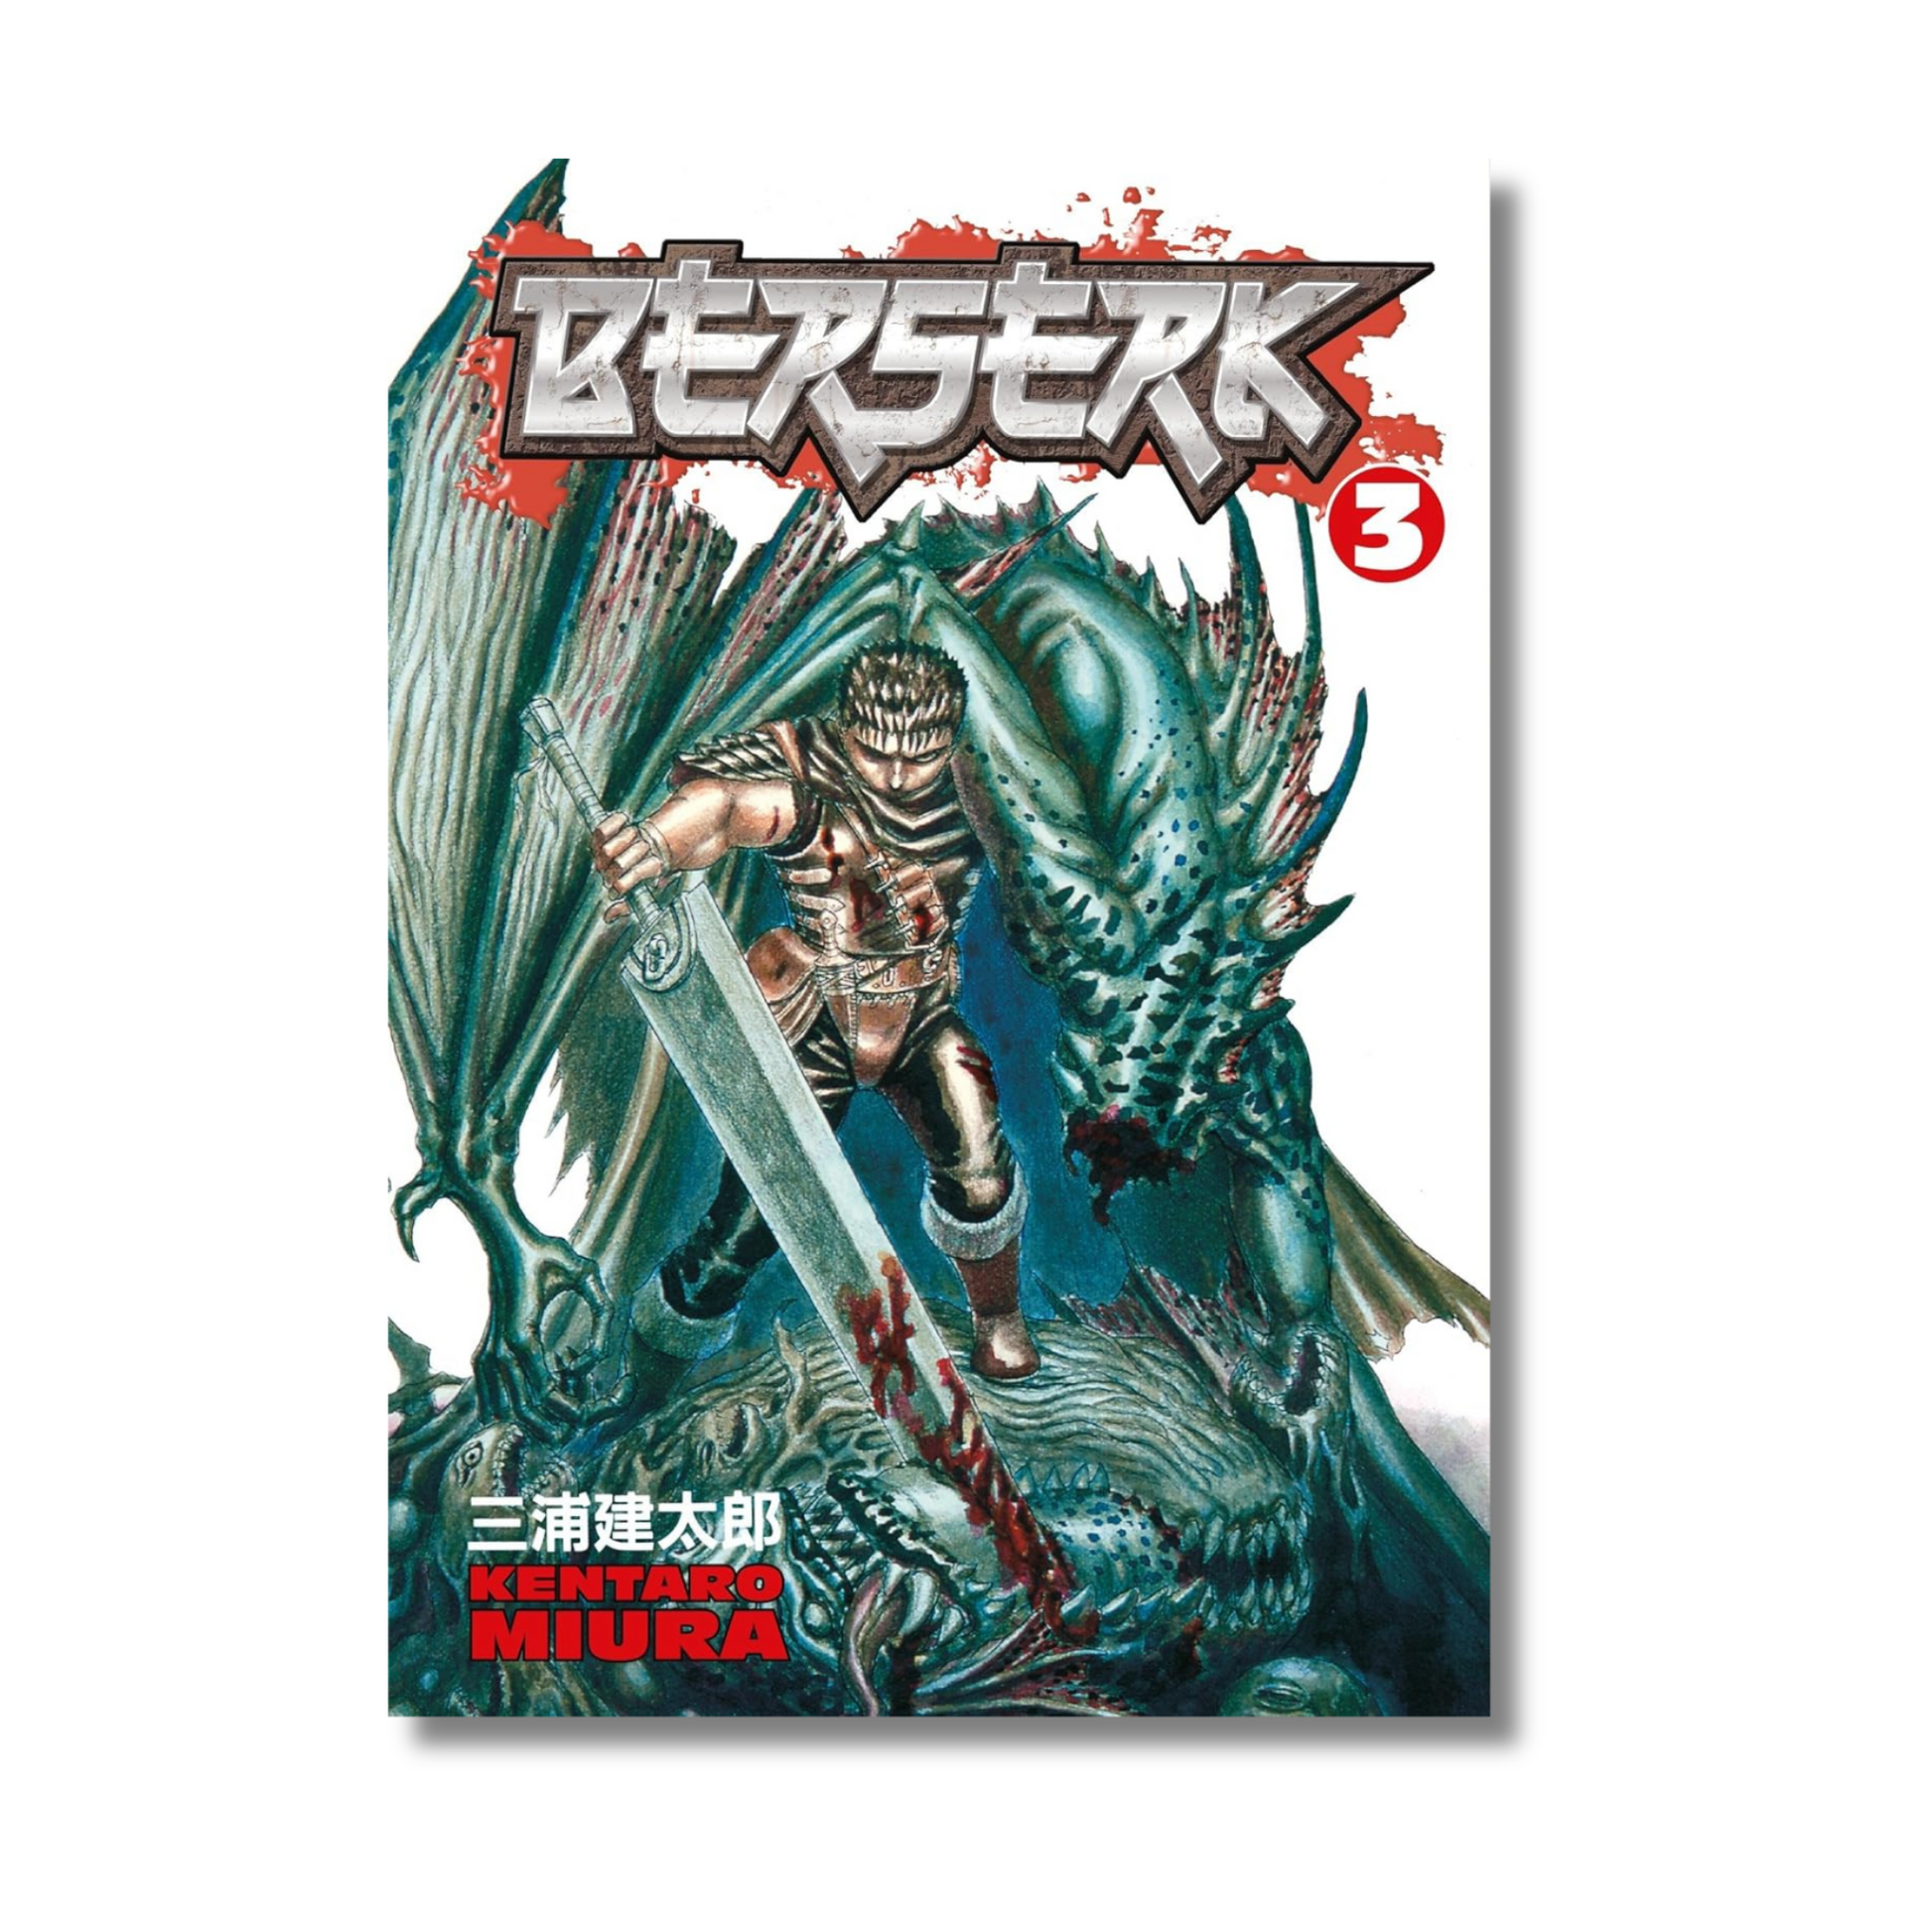 Buy Berserk Volume 3 by Kentaro Miura (Paperback) - Gyaanstore